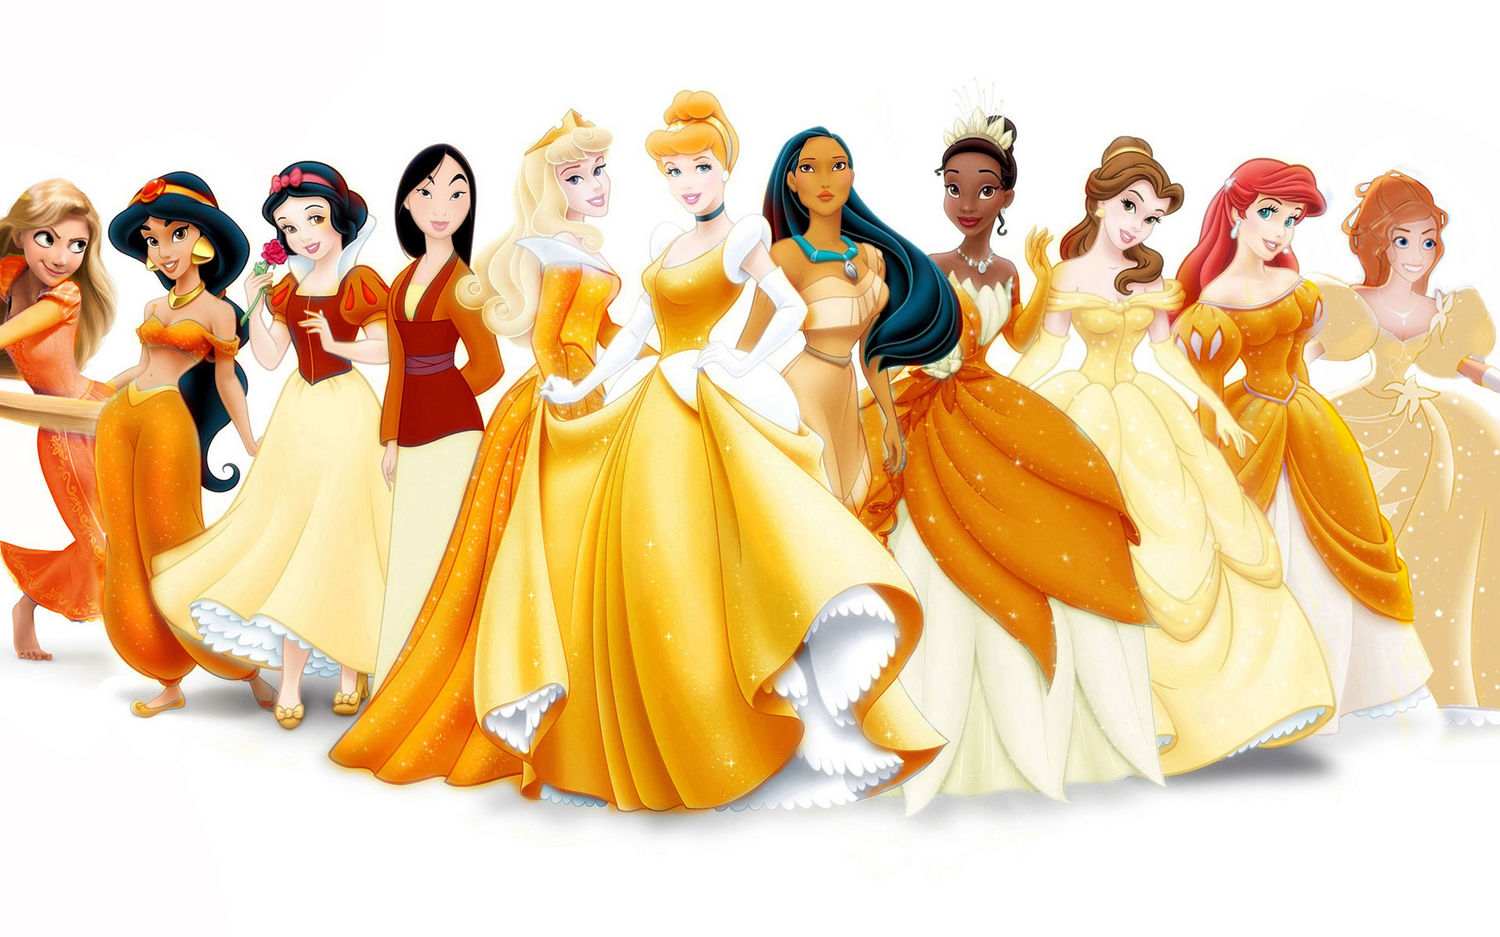 7 Disney Princesses Who Never Came to Be